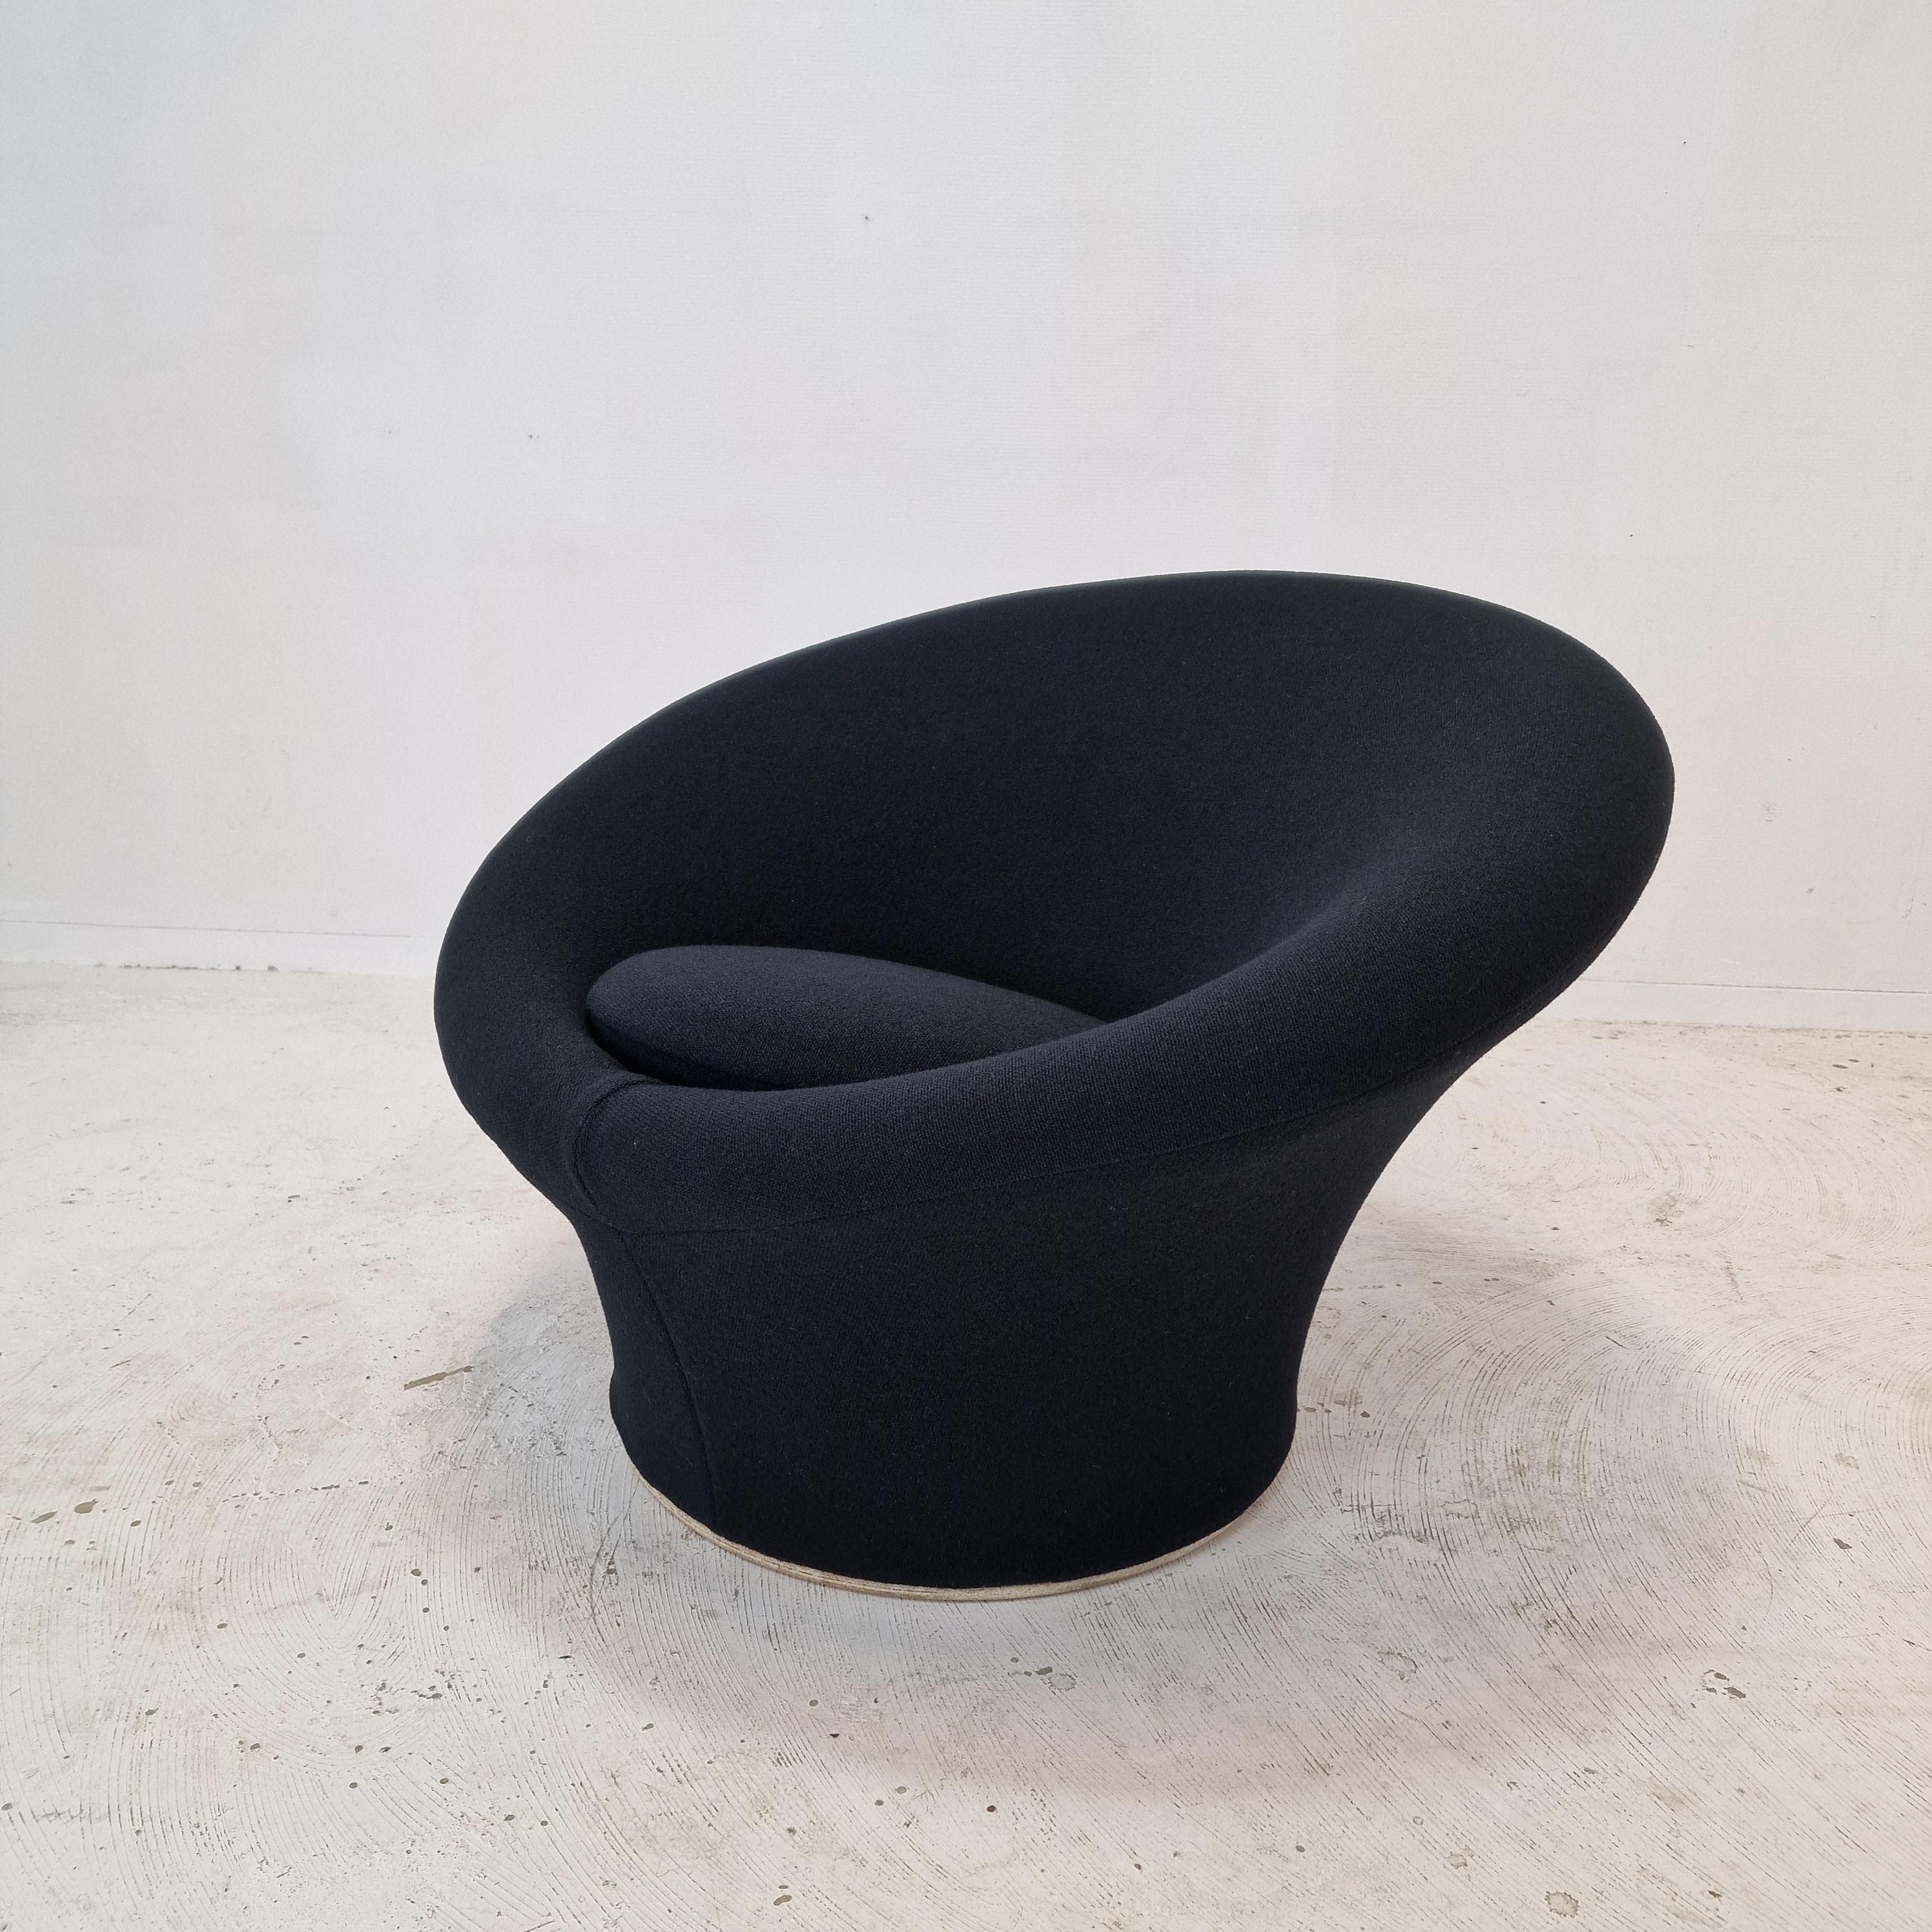 Sehr bequemer Artifort Mushroom Stuhl, entworfen von Pierre Paulin in den 60er Jahren. 
Dieser originale Mushroom Chair wurde in den 70er Jahren hergestellt.

Er ist mit dem originalen Kvadrat Tonus Wollstoff, Farbe schwarz, bezogen.
Dieser